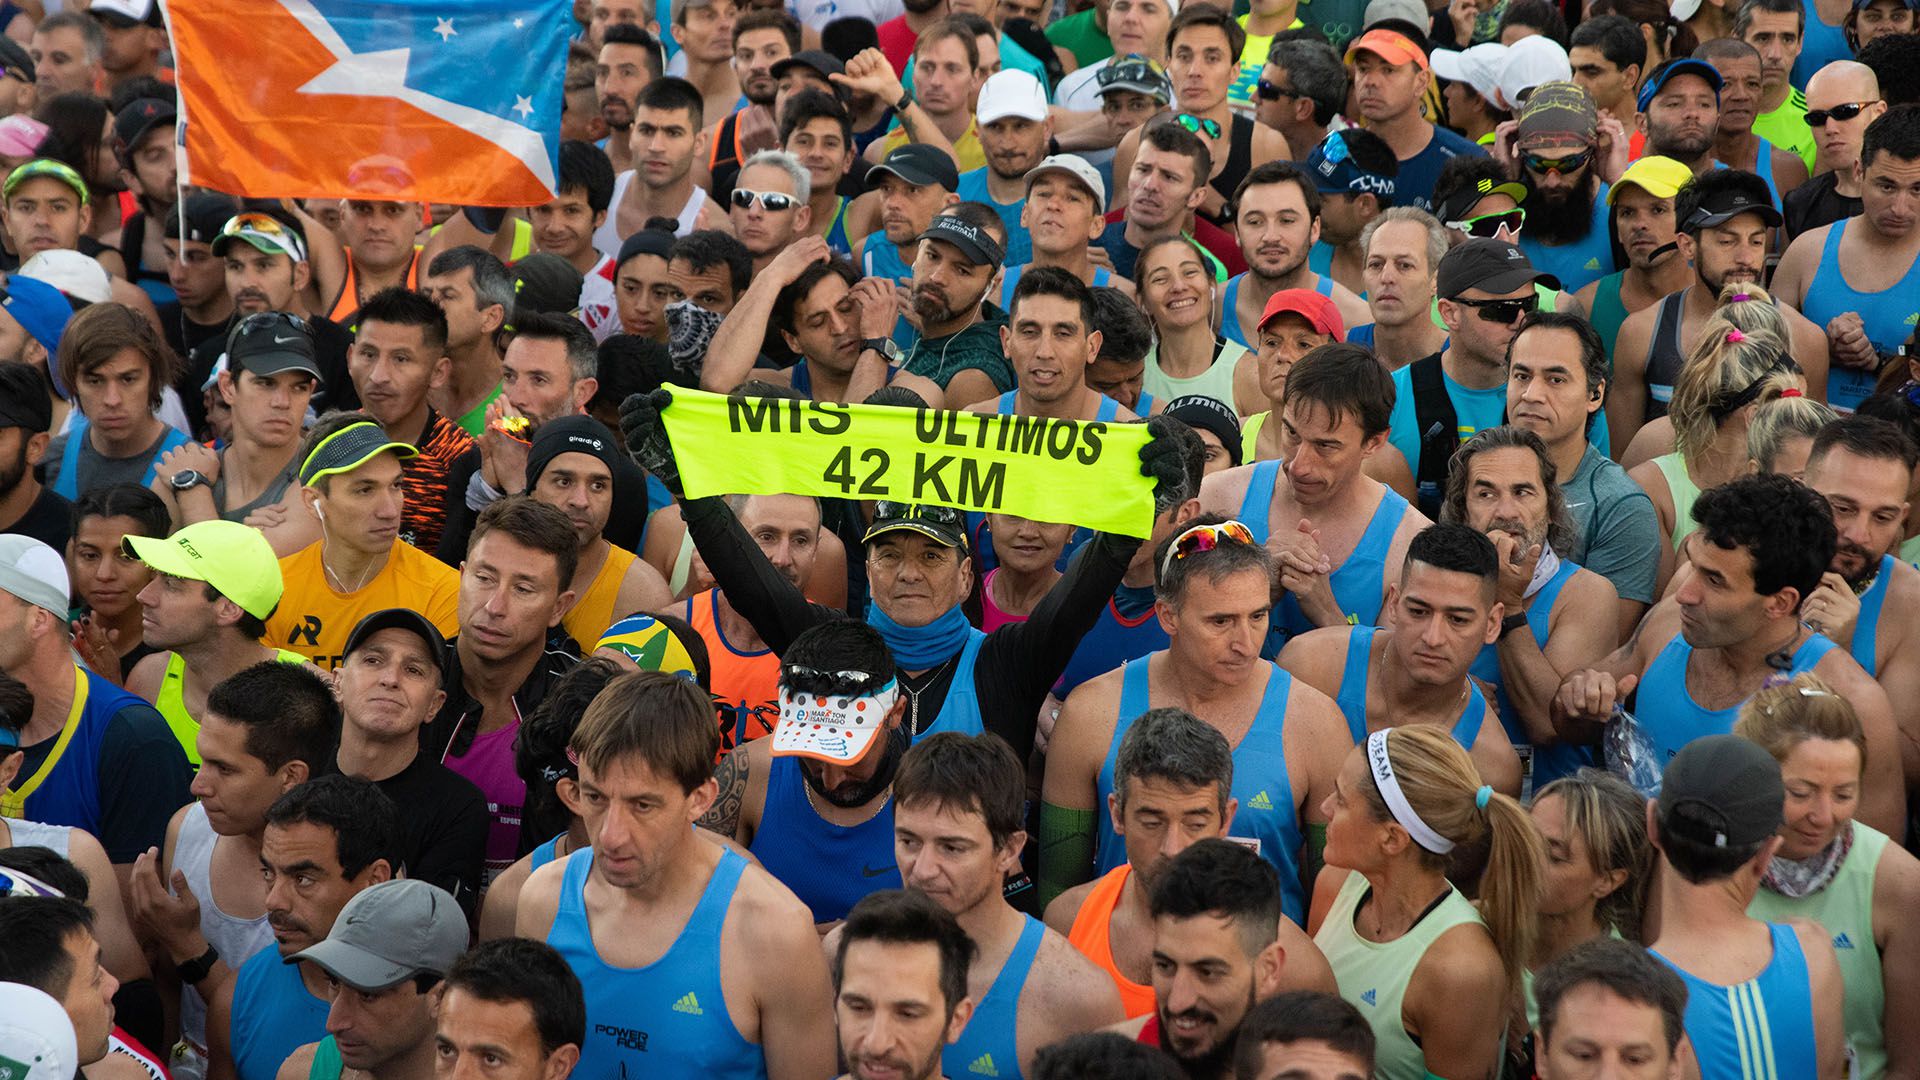 El corredor que anunció que esta sería la última maratón de su vida